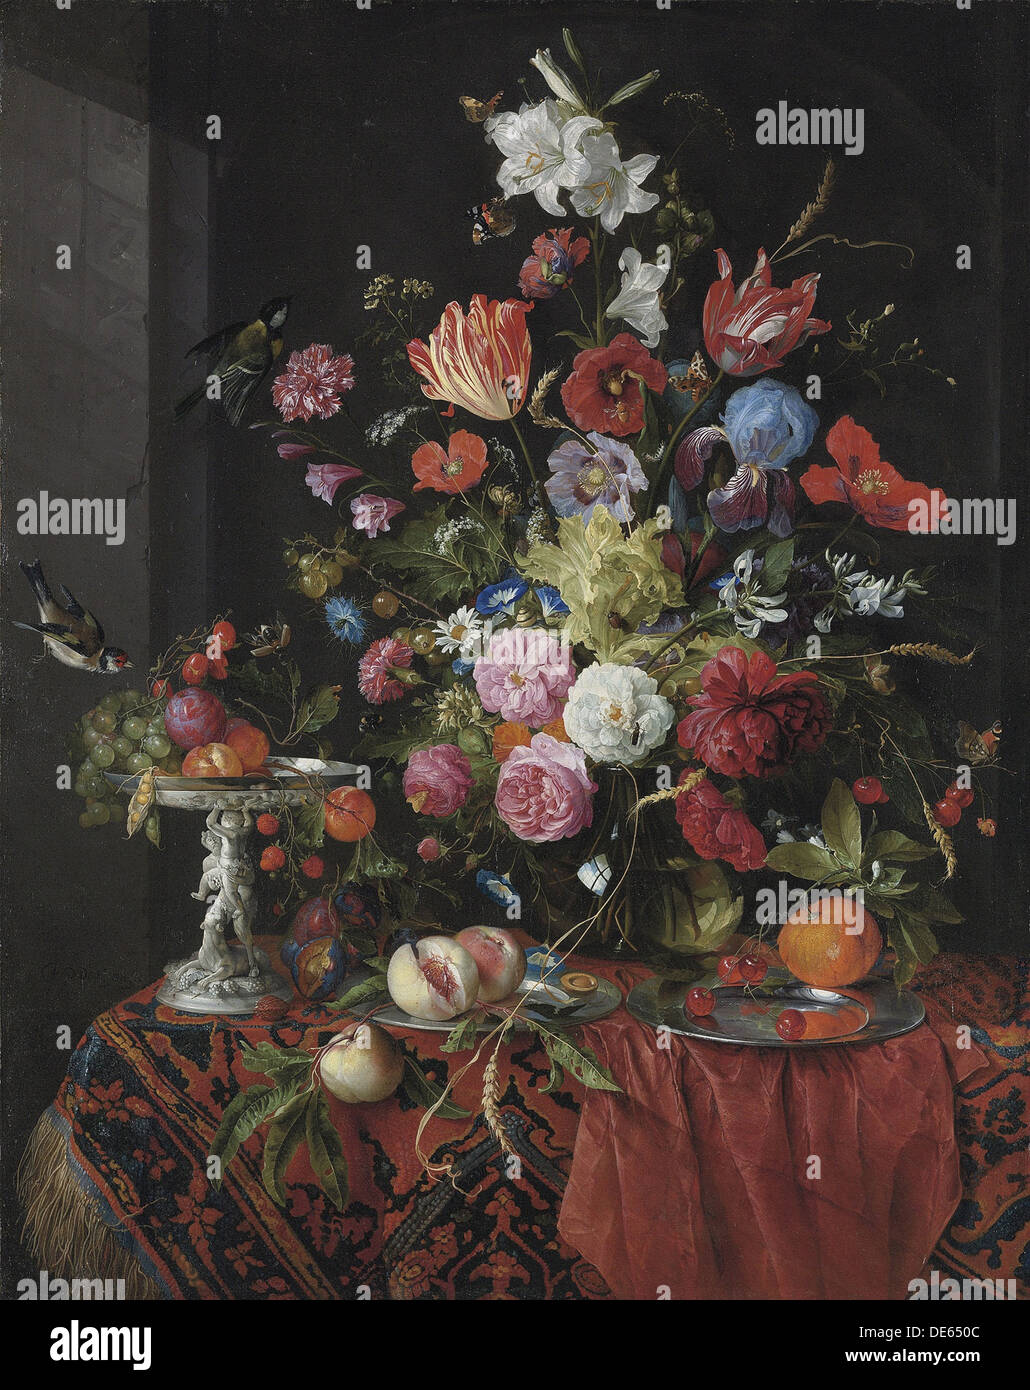 Fleurs dans un vase en verre sur une table drapée, avec une médaille d'tazza, fruits, insectes et oiseaux. Artiste : Heem, Jan Davidsz. de (1606-1684) Banque D'Images